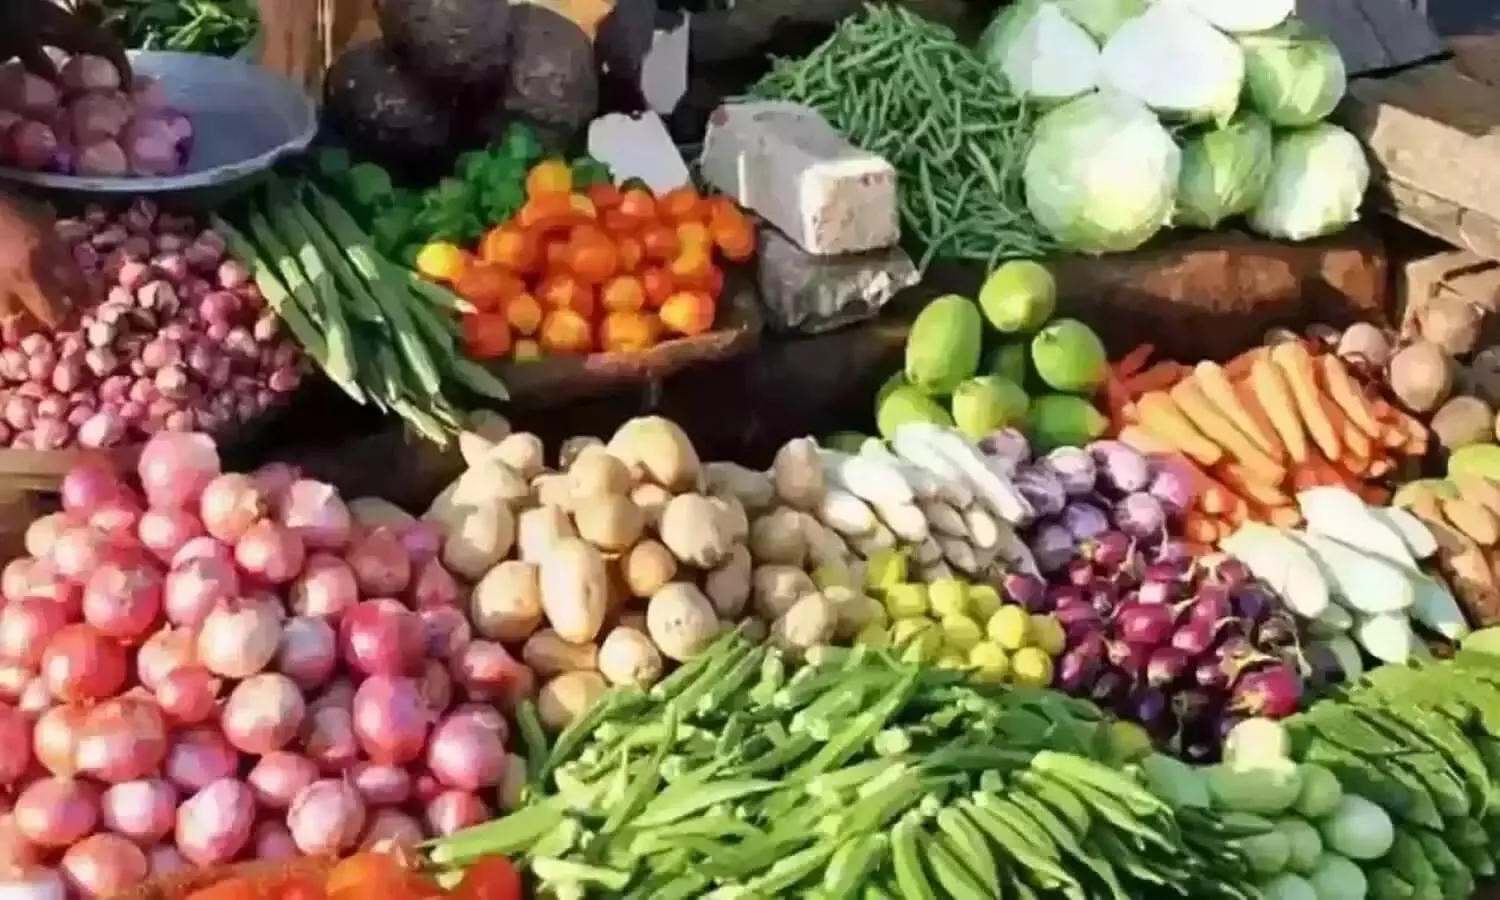 UP Vegetable Price: लखनऊ में सब्जियों के दाम में उछाल जारी, जानें अन्य जनपदों में क्या है सब्जी की कीमत